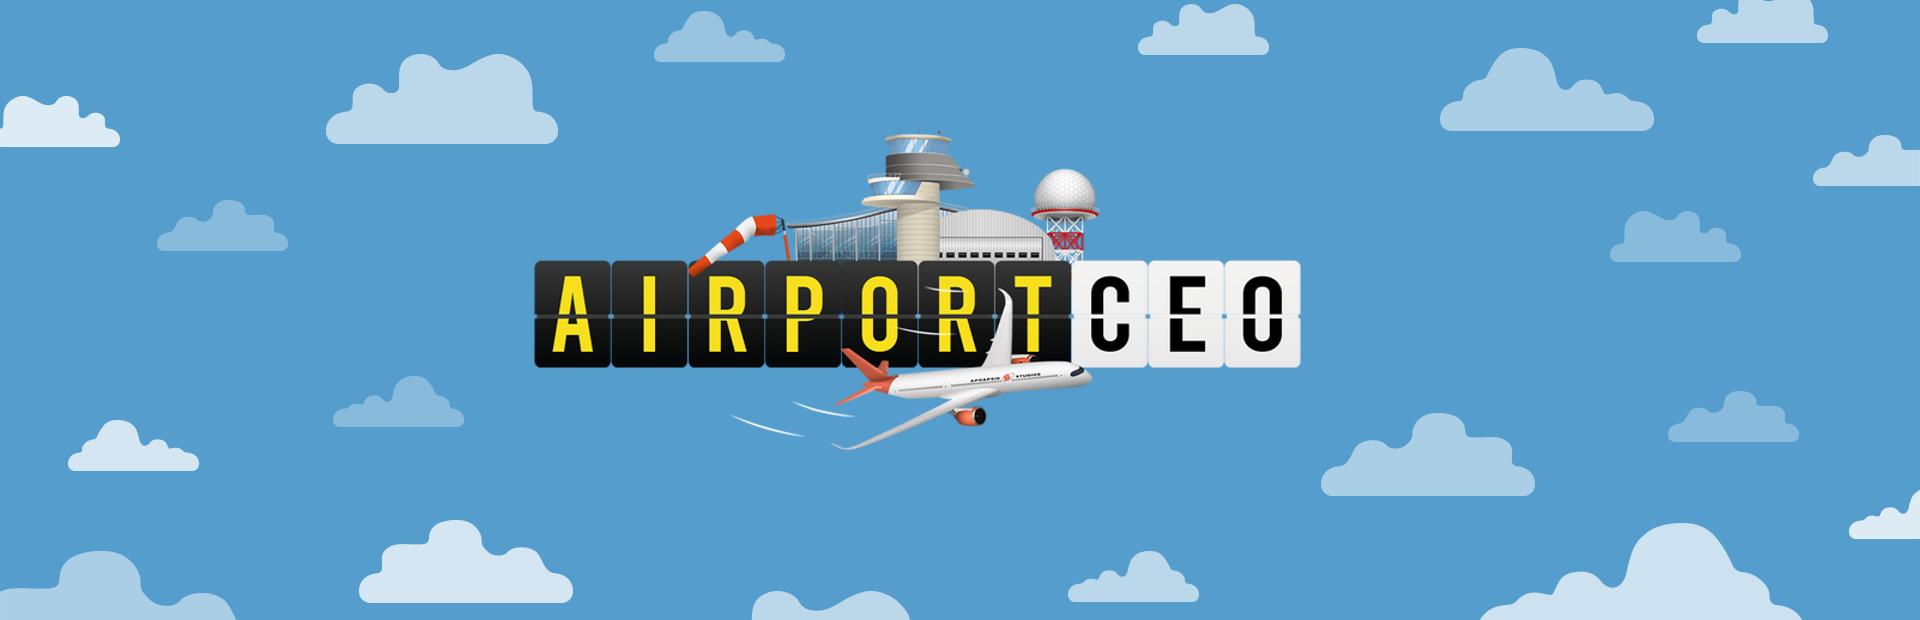 دانلود بازی Airport CEO برای کامپیوتر | گیمباتو